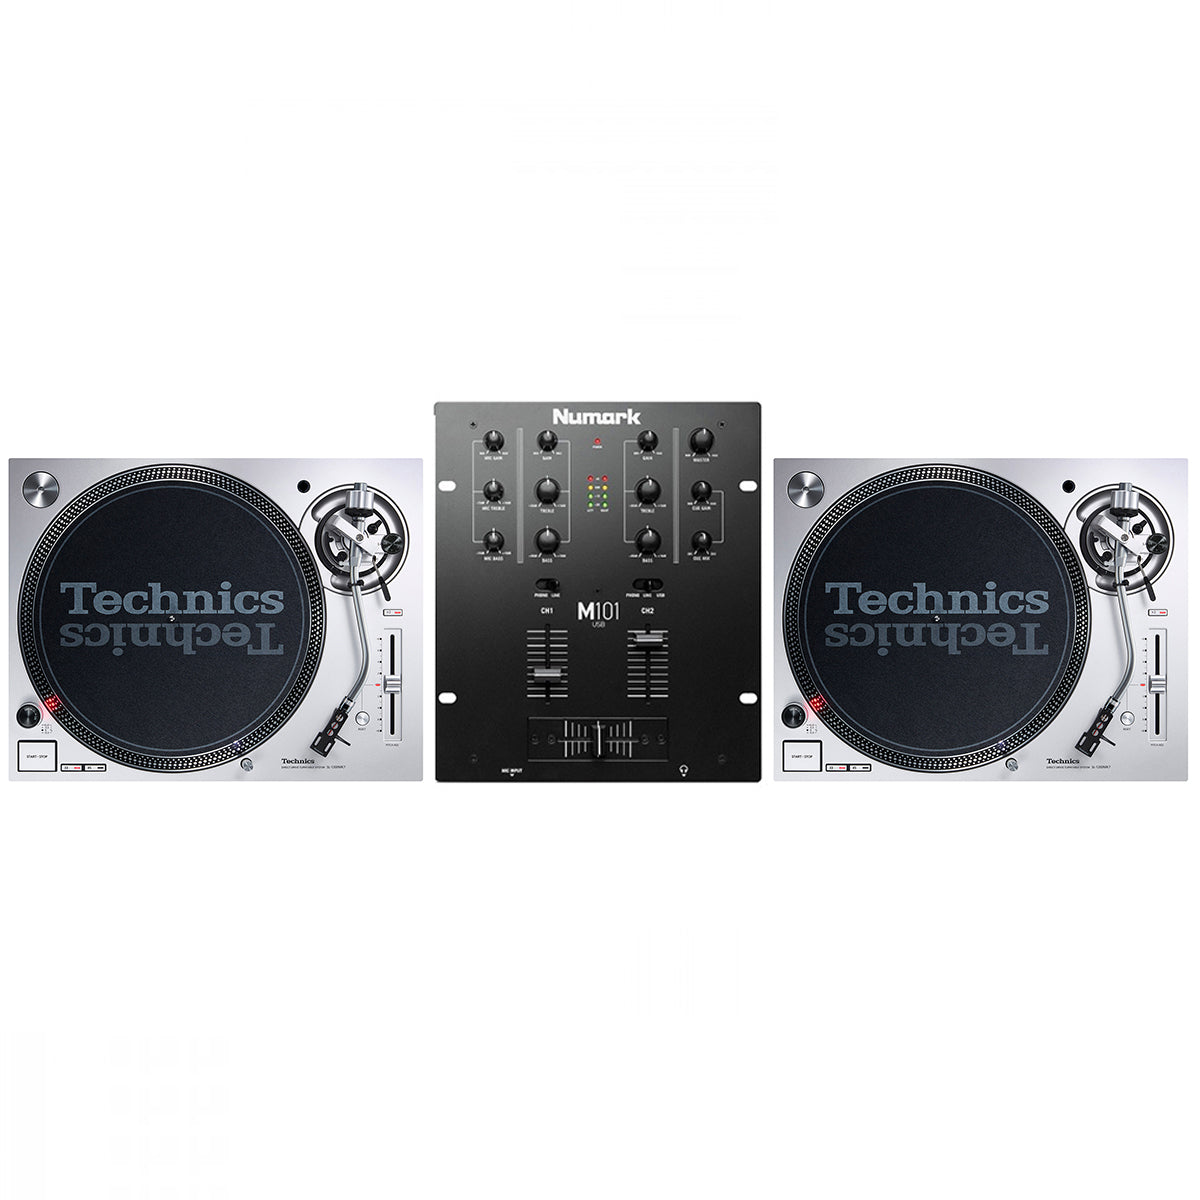 Technics SL1200 MK7 + Numark M101USB Mixer